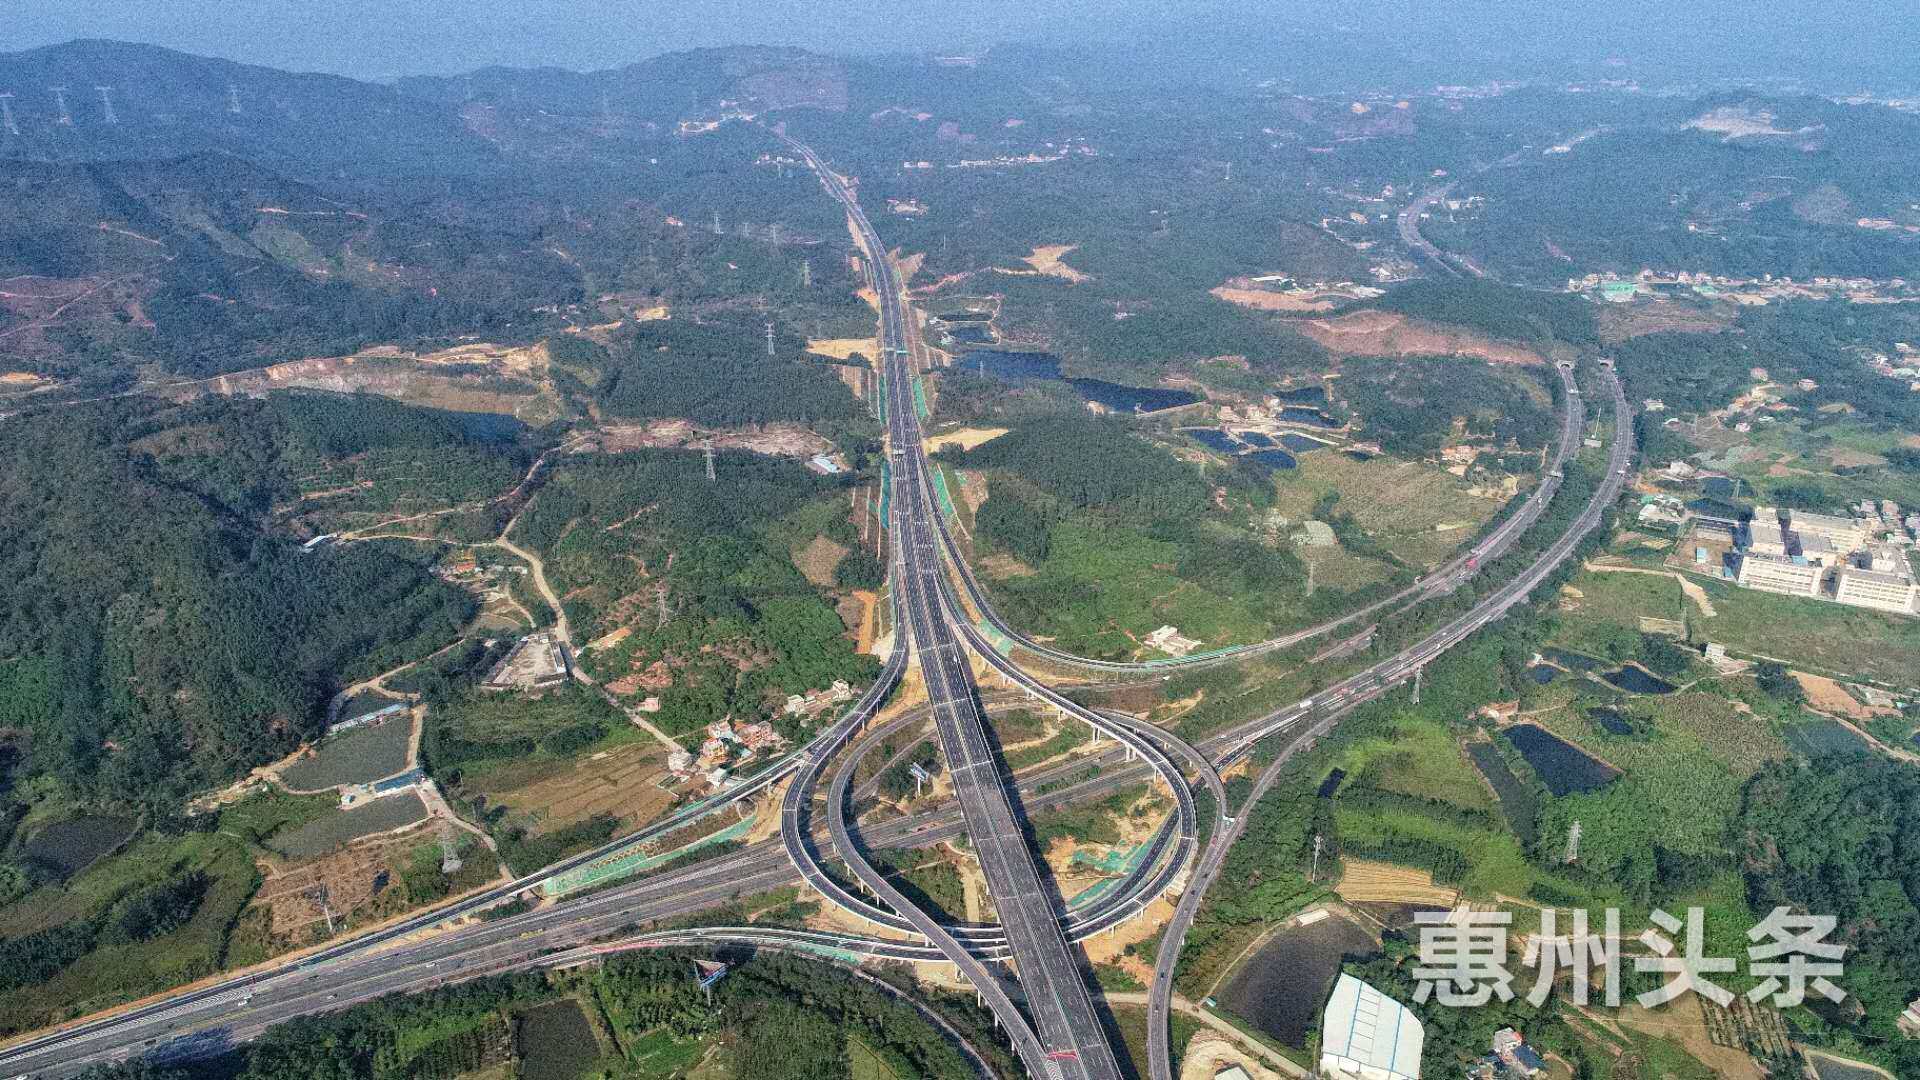 宁韶高速公路主线上跨石长铁路跨顺利完成架设_交通建设_交通频道